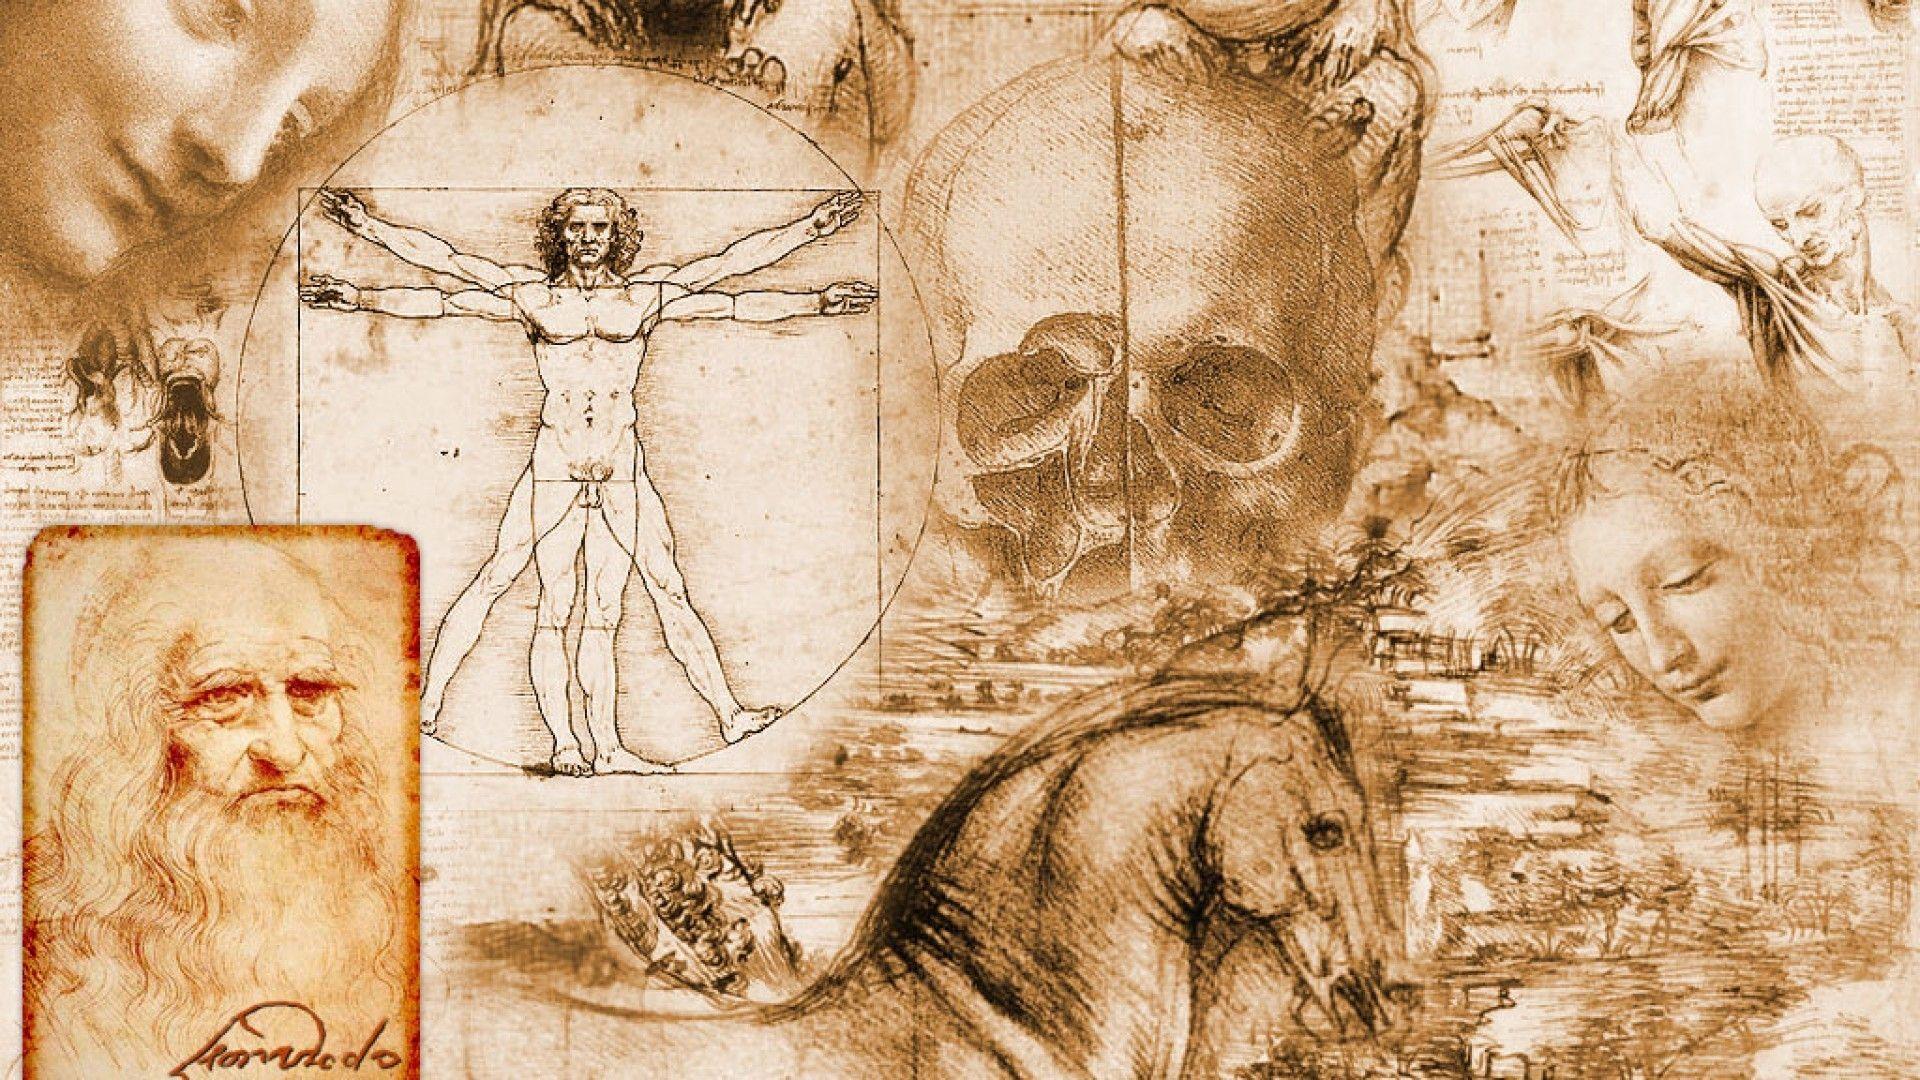 مرد ویترویوسی اثر لئوناردو داوینچی و مونالیزا در یک اثر